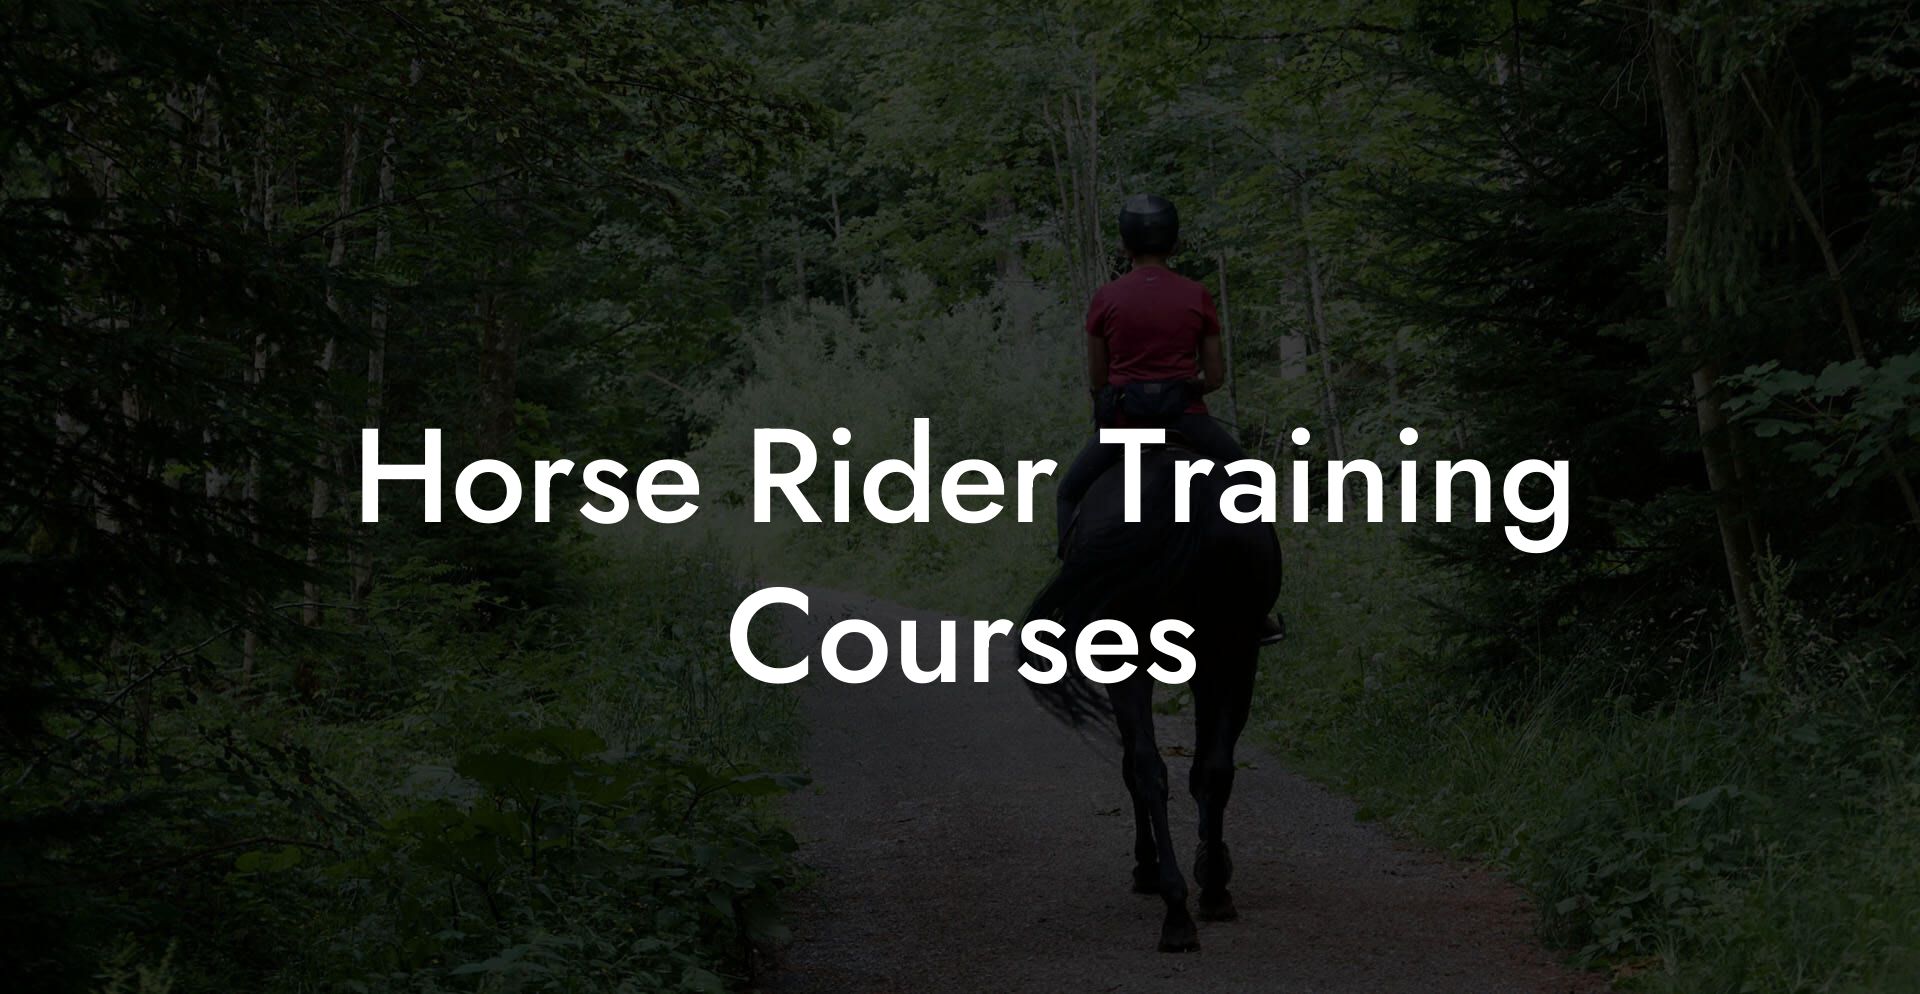 Horse Rider Training Courses